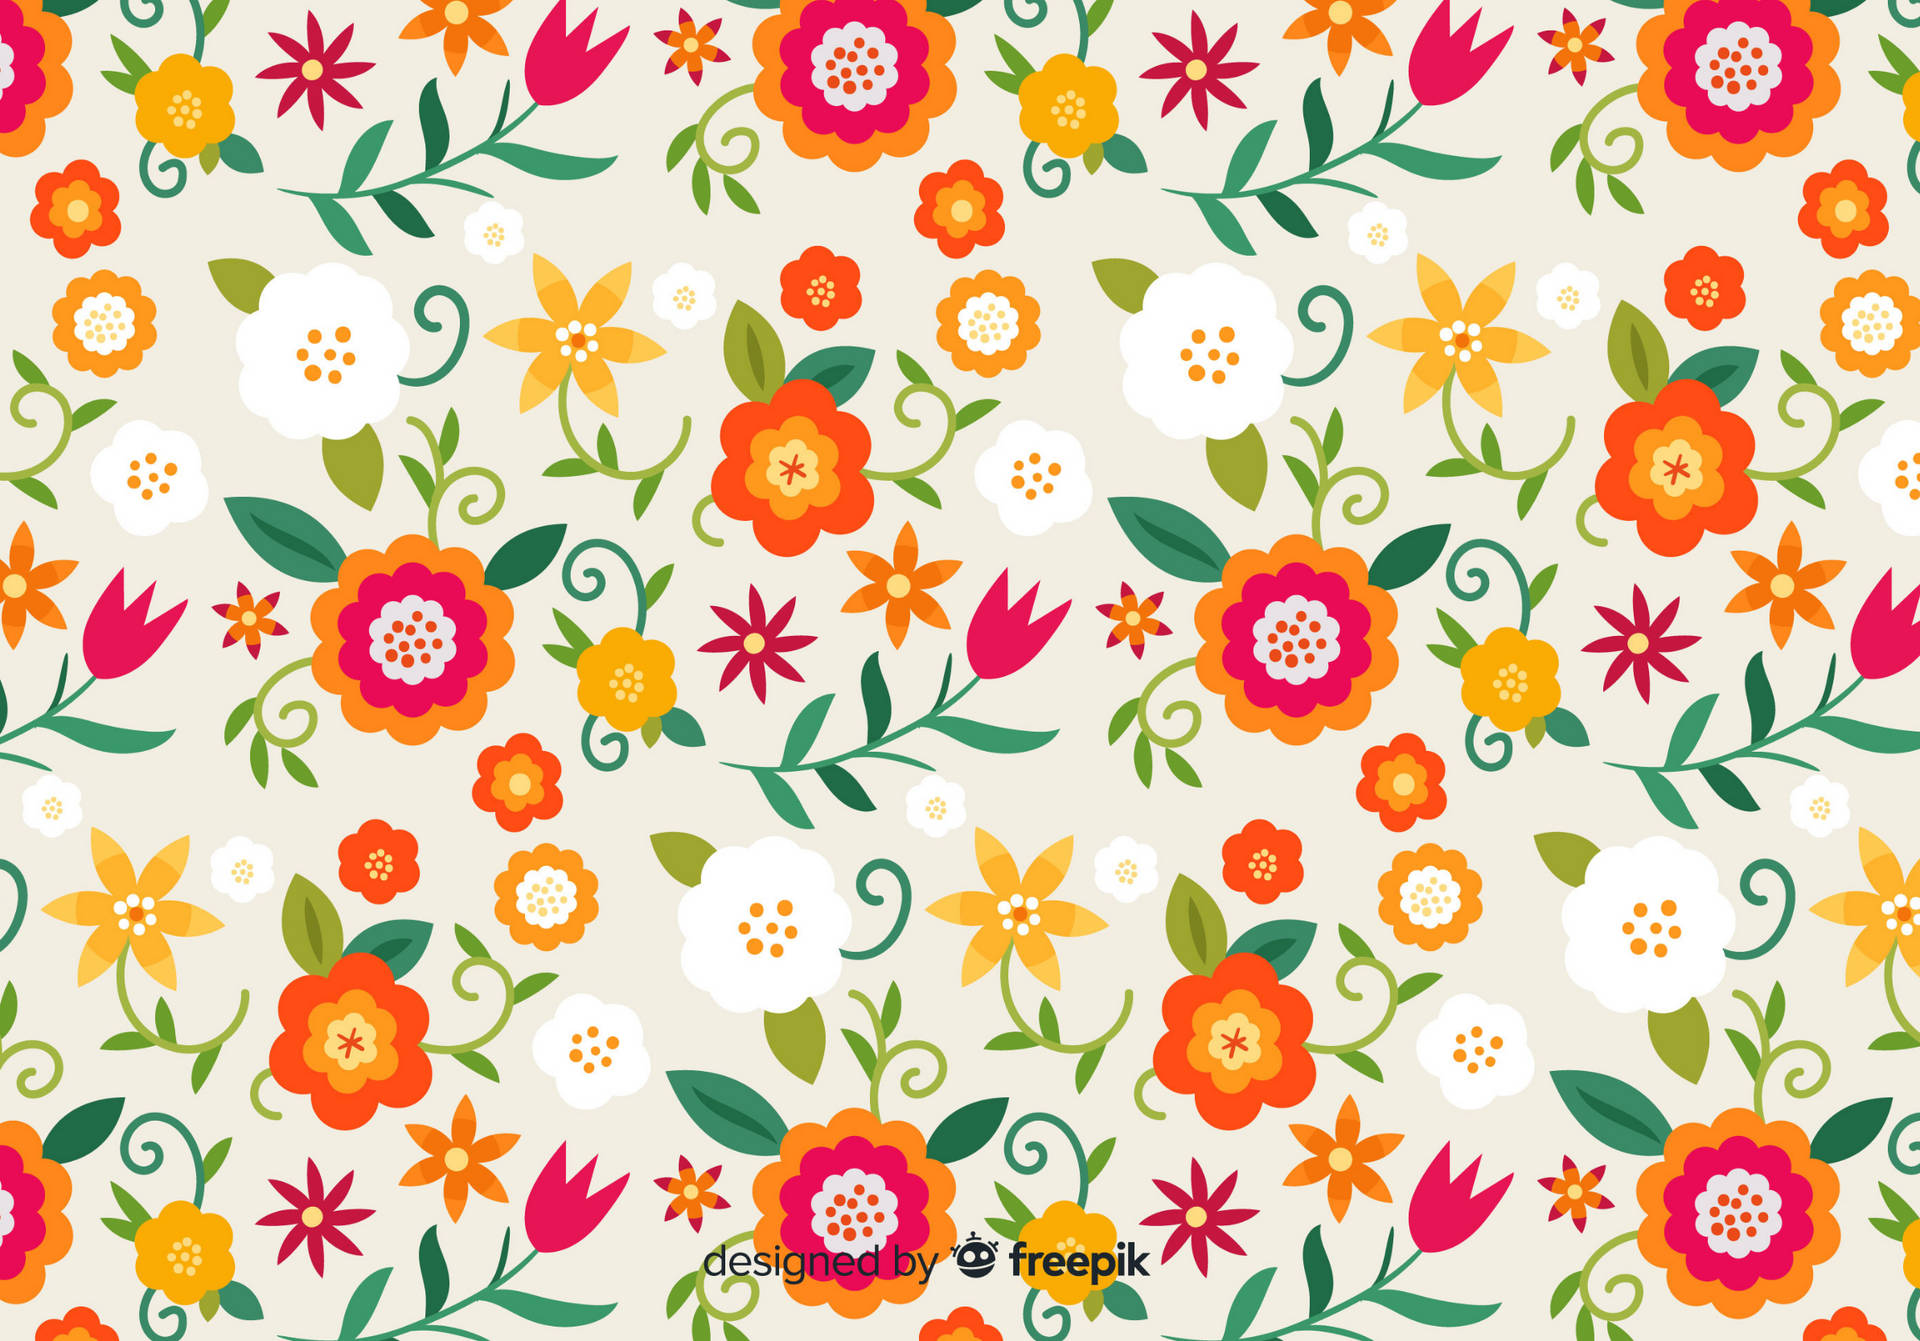 Ipad Pro Cute Floral Pattern Wallpaper